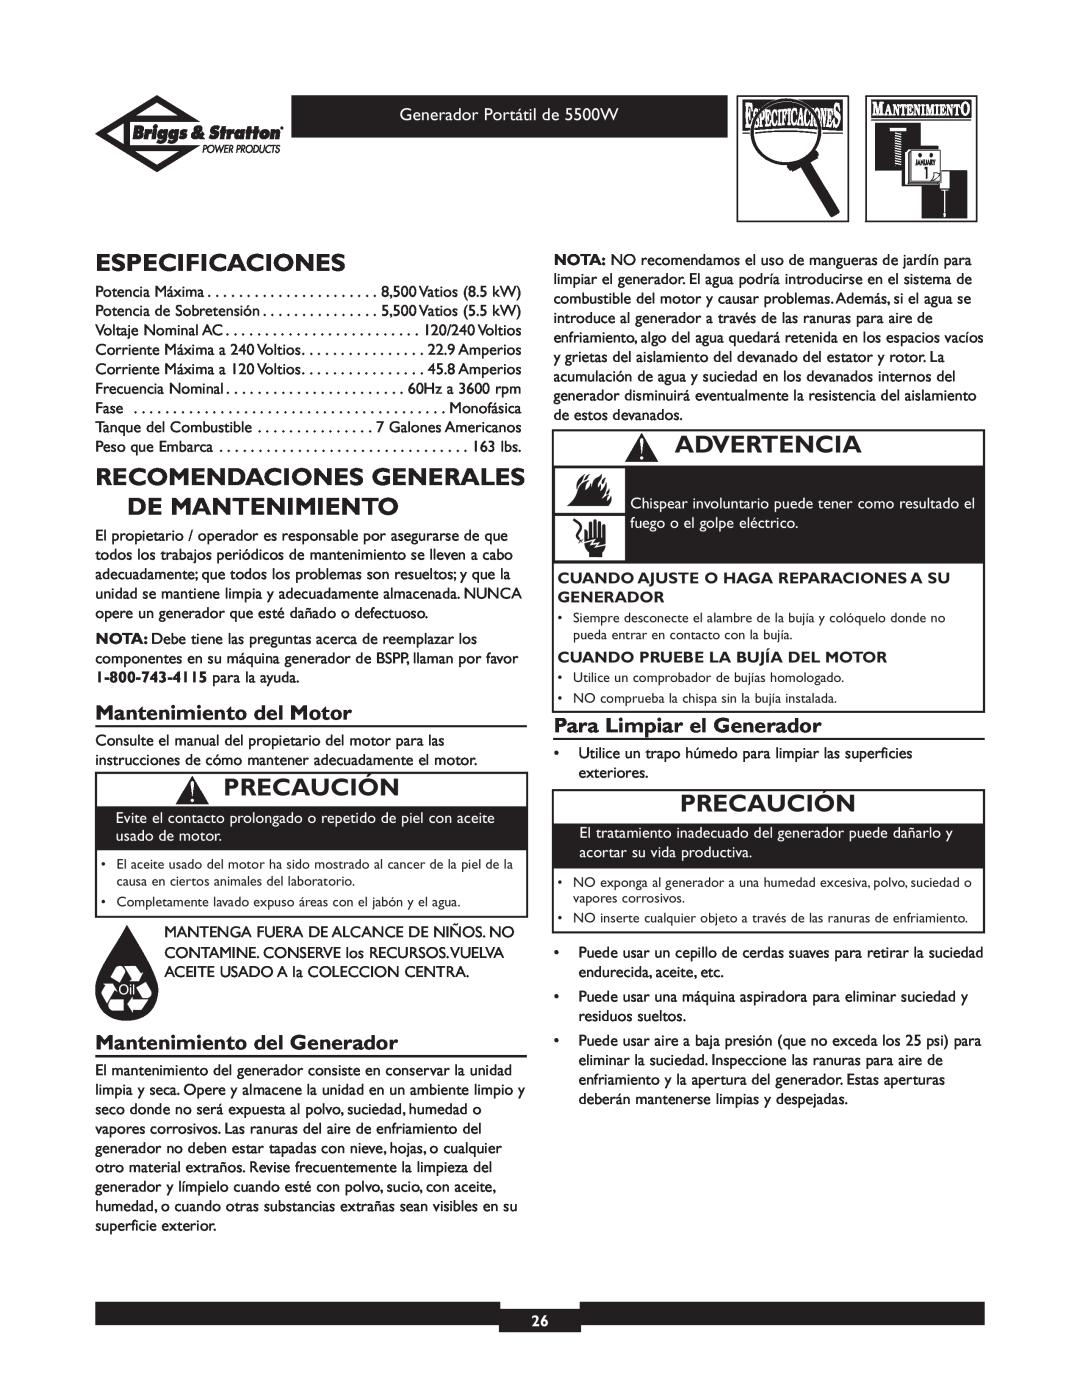 Briggs & Stratton 030209 Especificaciones, Recomendaciones Generales De Mantenimiento, Mantenimiento del Motor, Precaución 